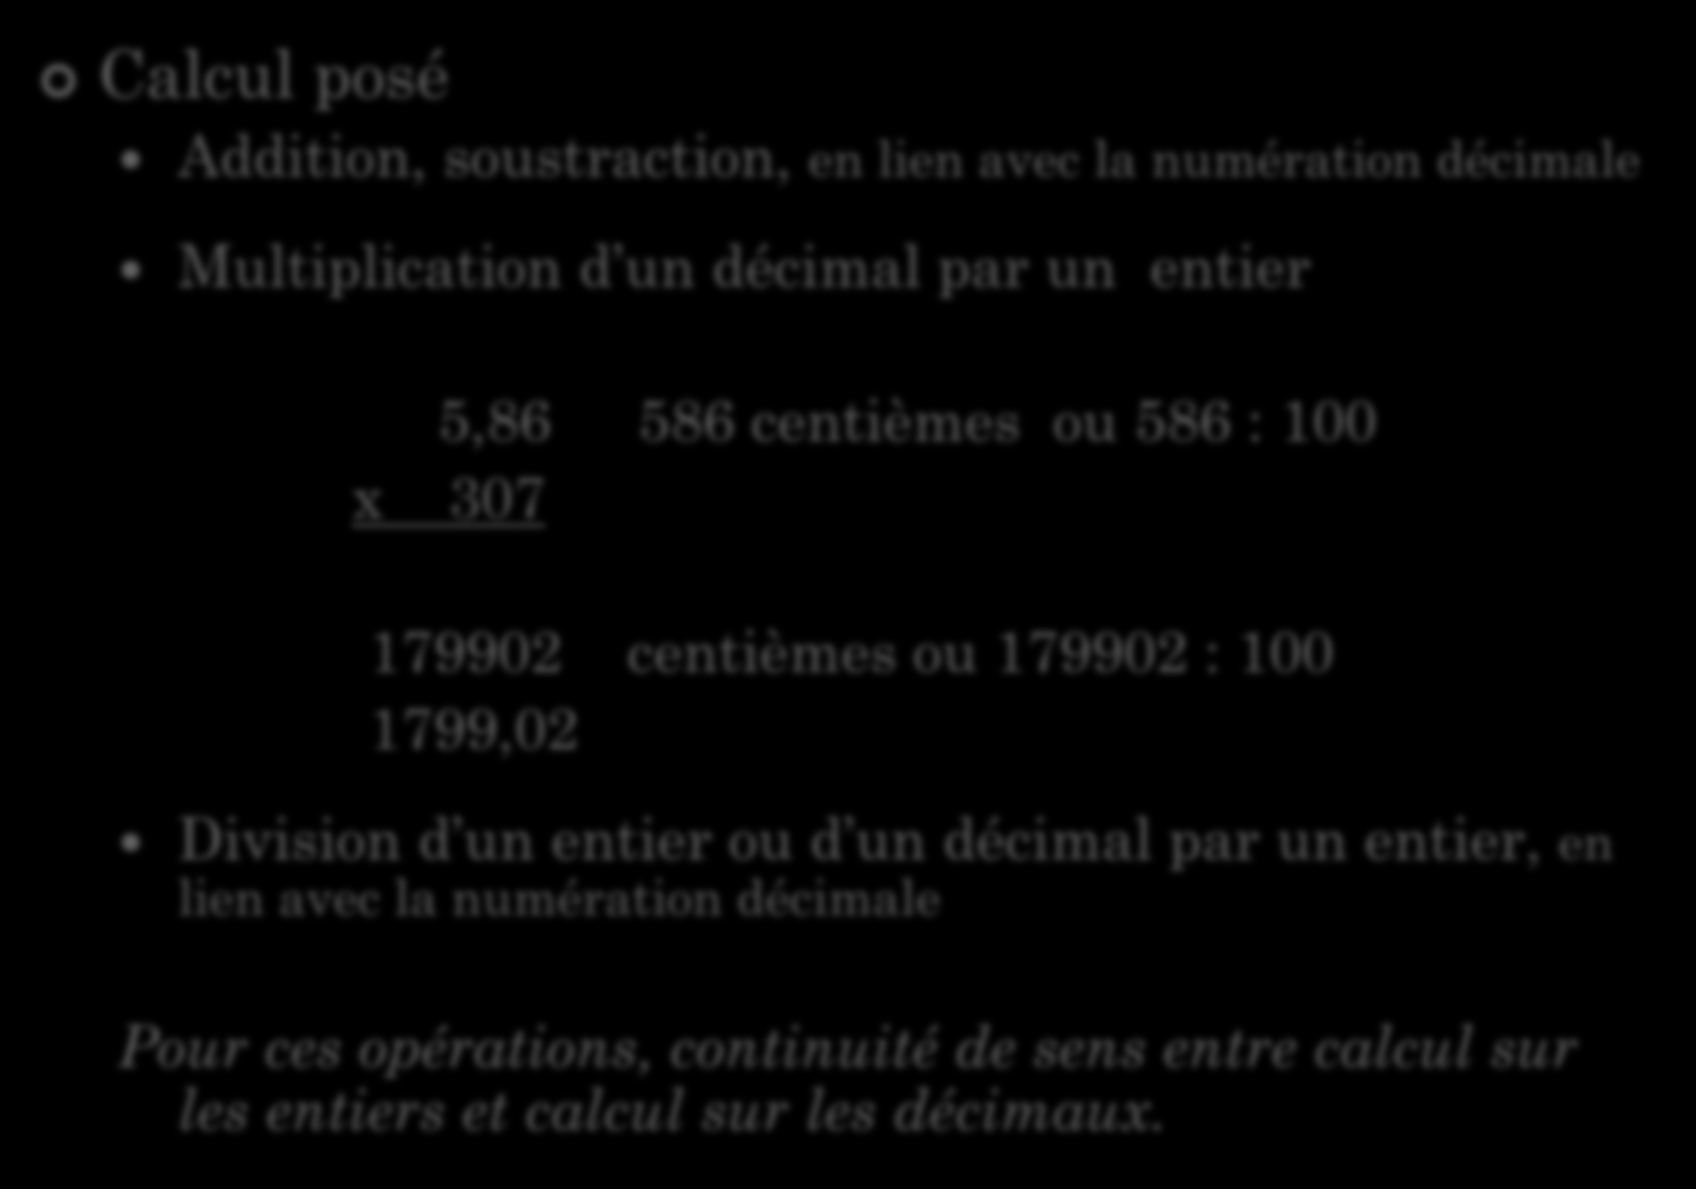 Calcul posé NOMBRES DÉCIMAUX ET CALCUL Points clés en calcul automatisé Addition, soustraction, en lien avec la numération décimale Multiplication d un décimal par un entier 5,86 586 centièmes ou 586